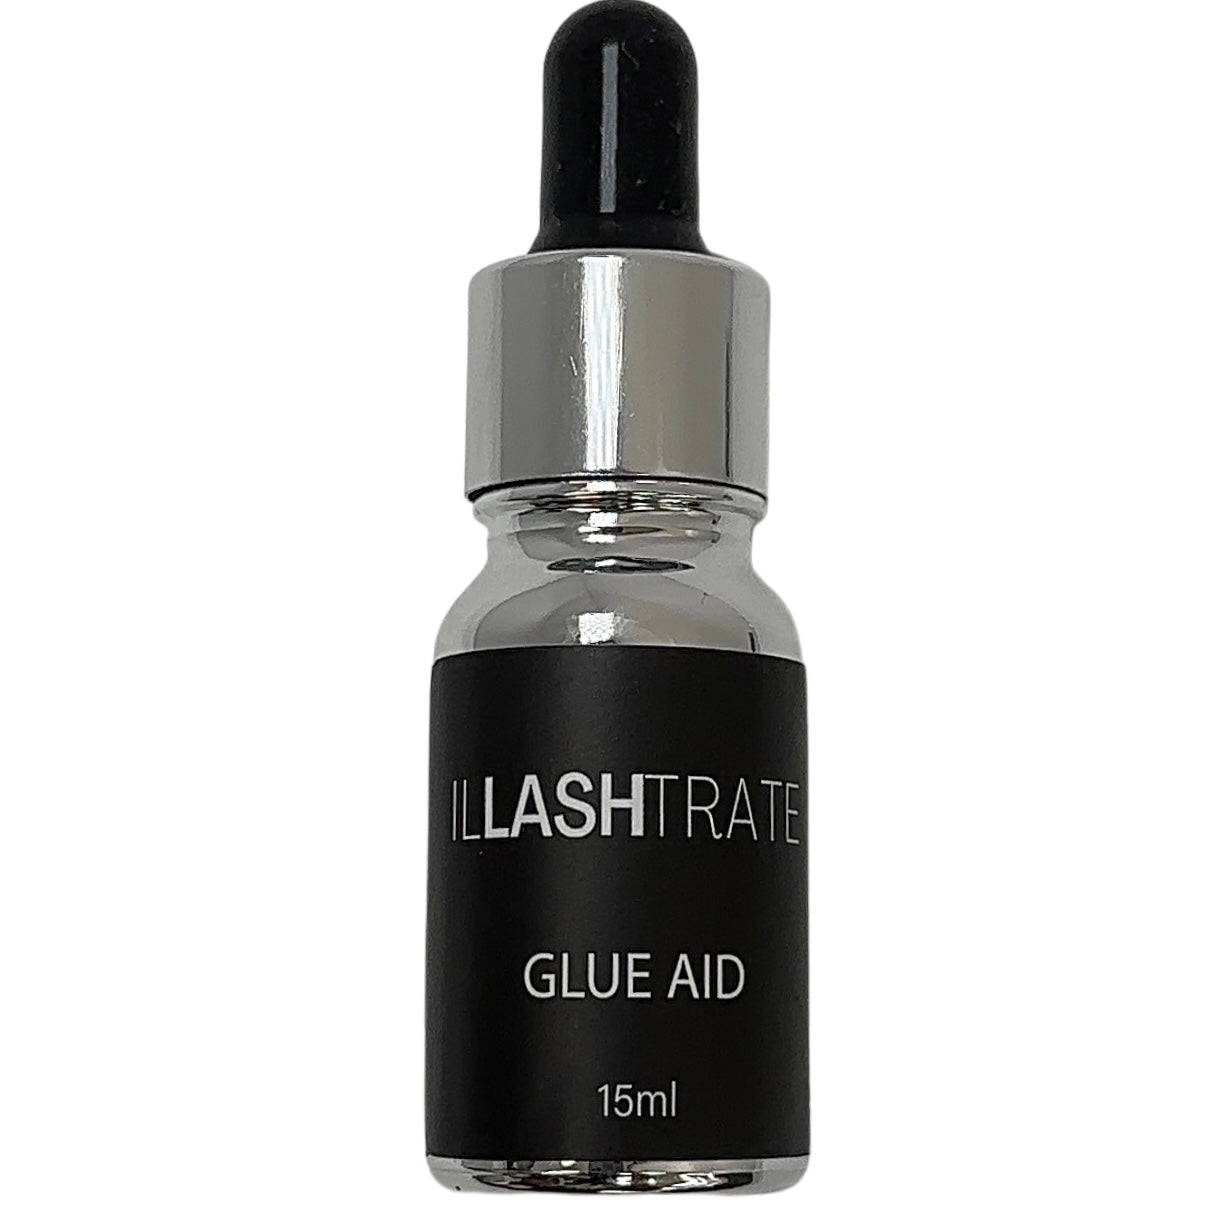 Glue Aid